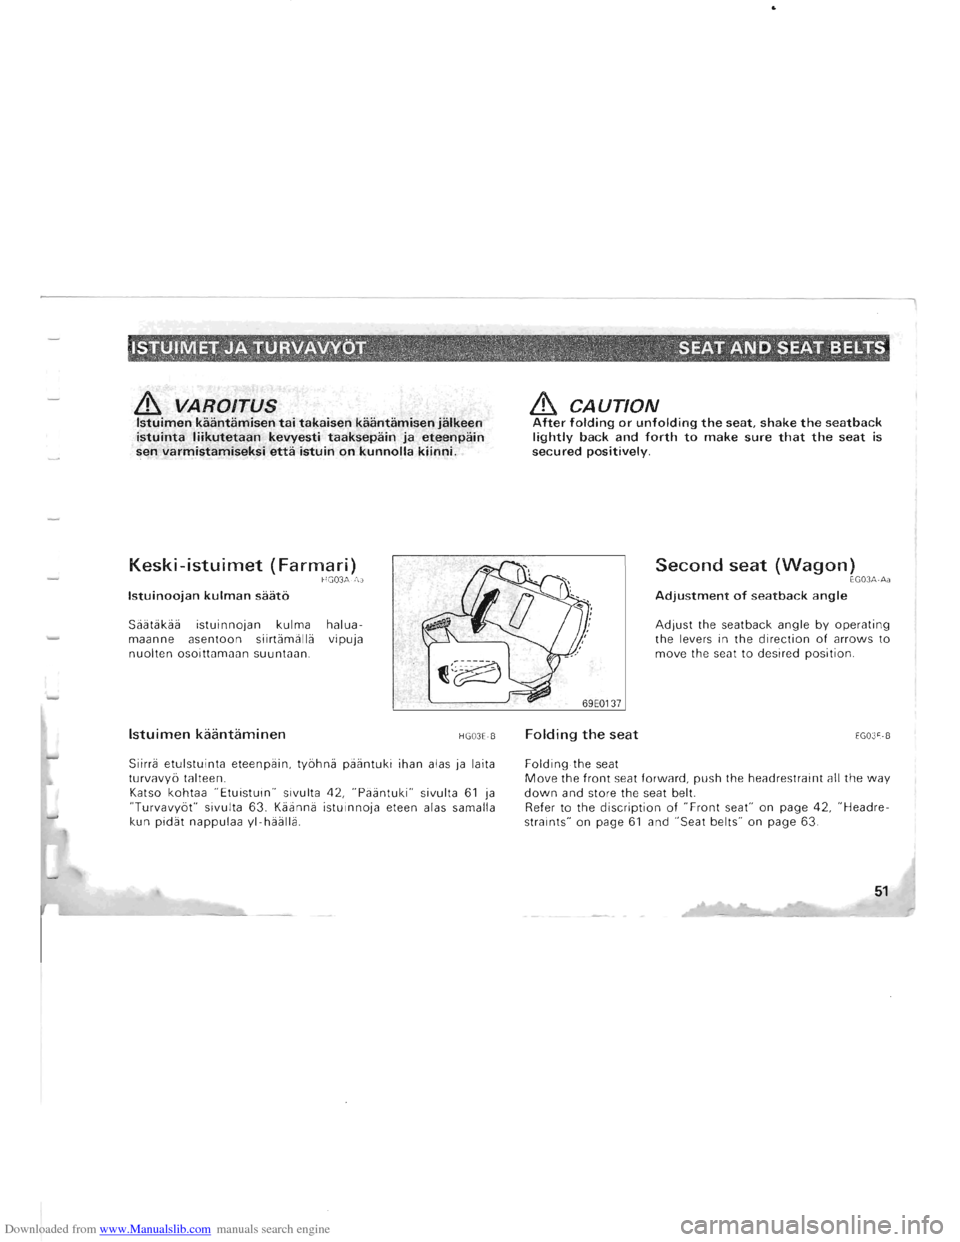 MITSUBISHI PAJERO 1996 2.G Service Manual Downloaded from www.Manualslib.com manuals search engine & VAROITUS Istuimen kaantamisen tai takaisen kaantamisen jalkeen istuinta liikutetaan kevyesti taaksepain ja eteenpain sen varmistamiseksi etta